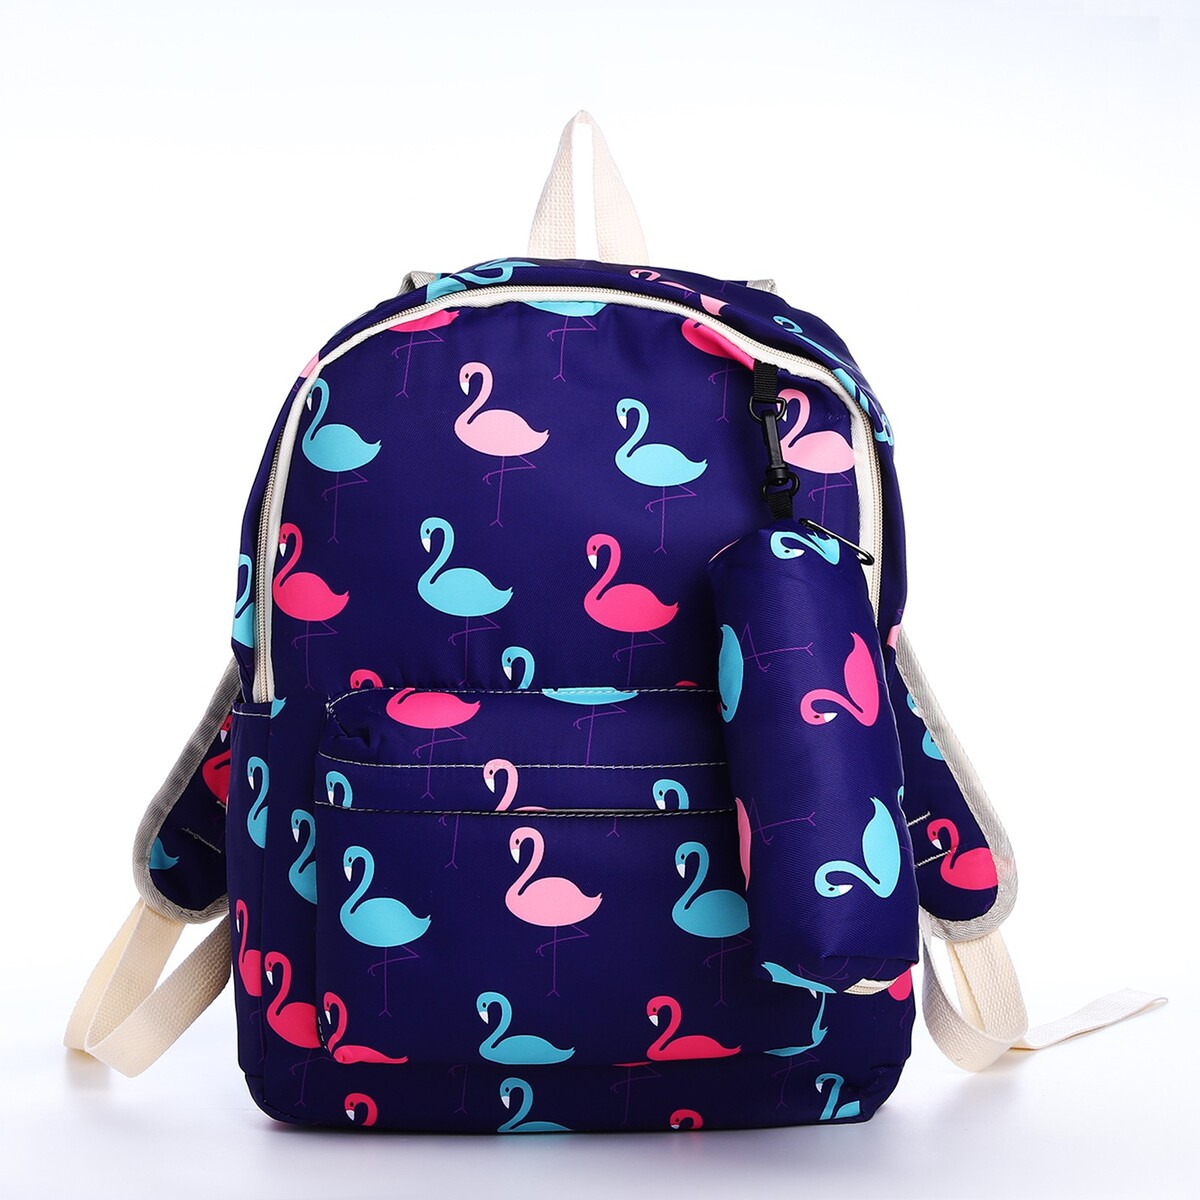 Рюкзак школьный из текстиля на молнии, 3 кармана, пенал, цвет фиолетовый рюкзак детский на молнии 3 наружных кармана фиолетовый